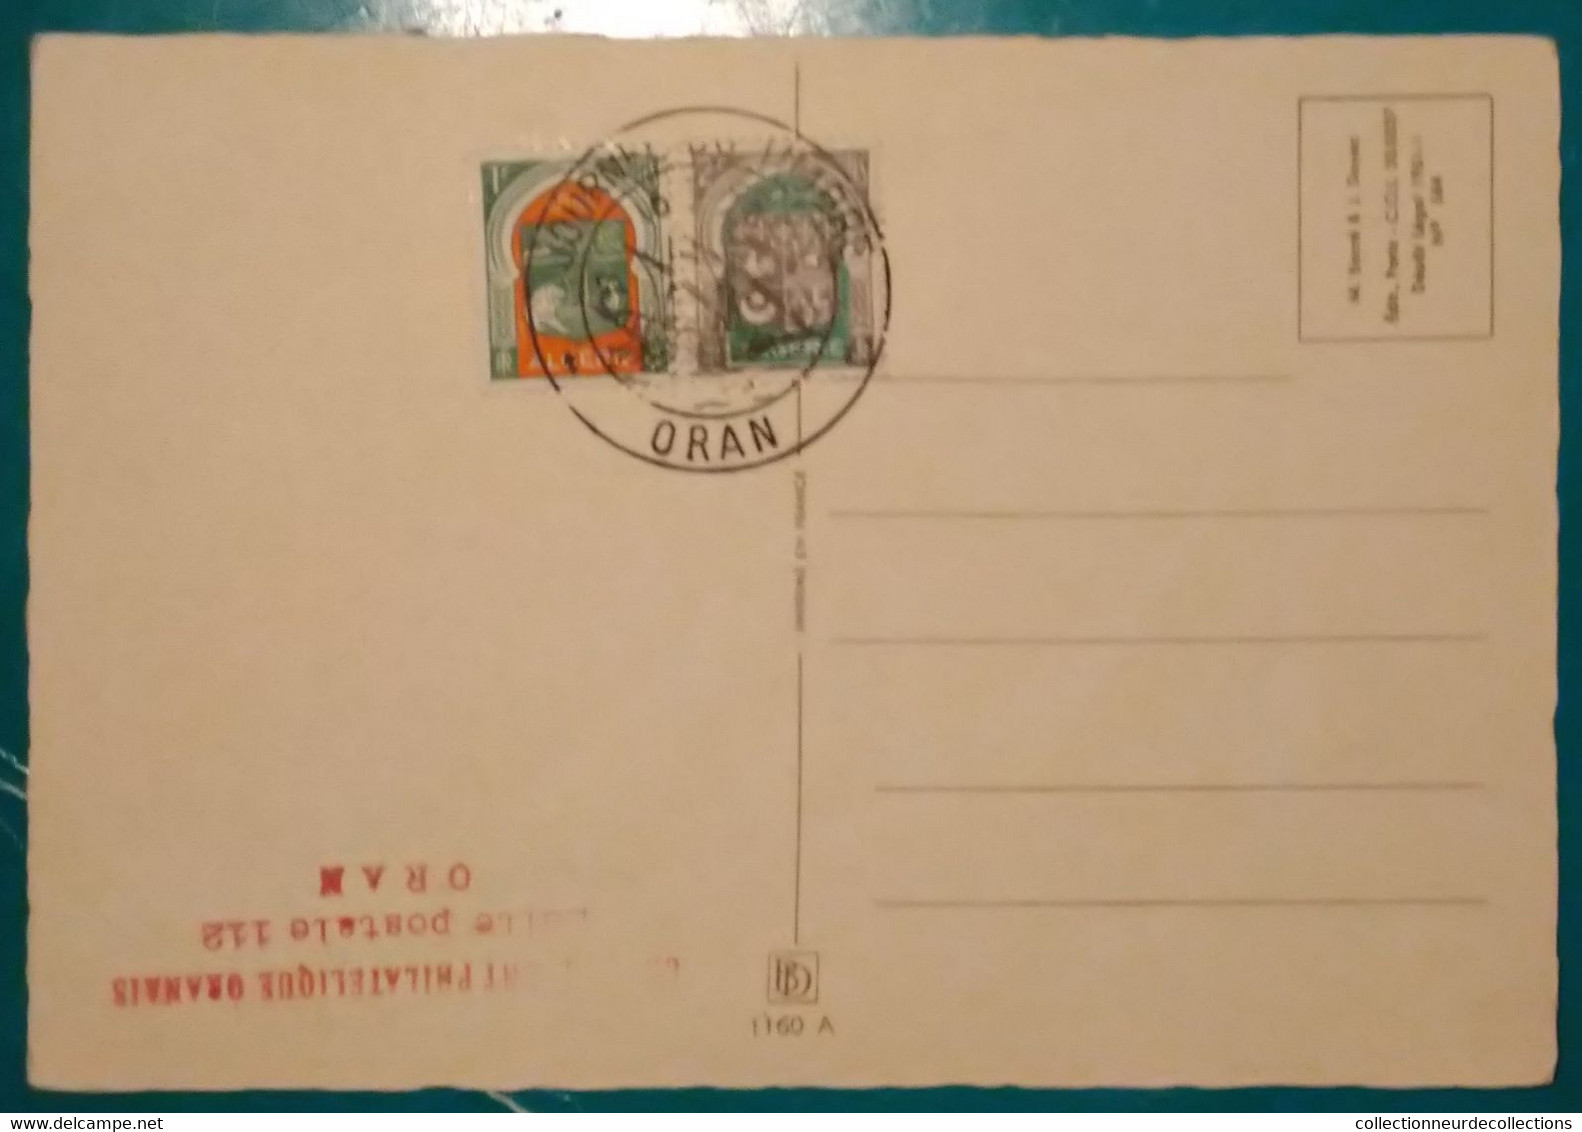 JOURNEE DU TIMBRE ALGERIE 1957 Service Maritime Postal YT 342 Premier Jour ORAN - FDC